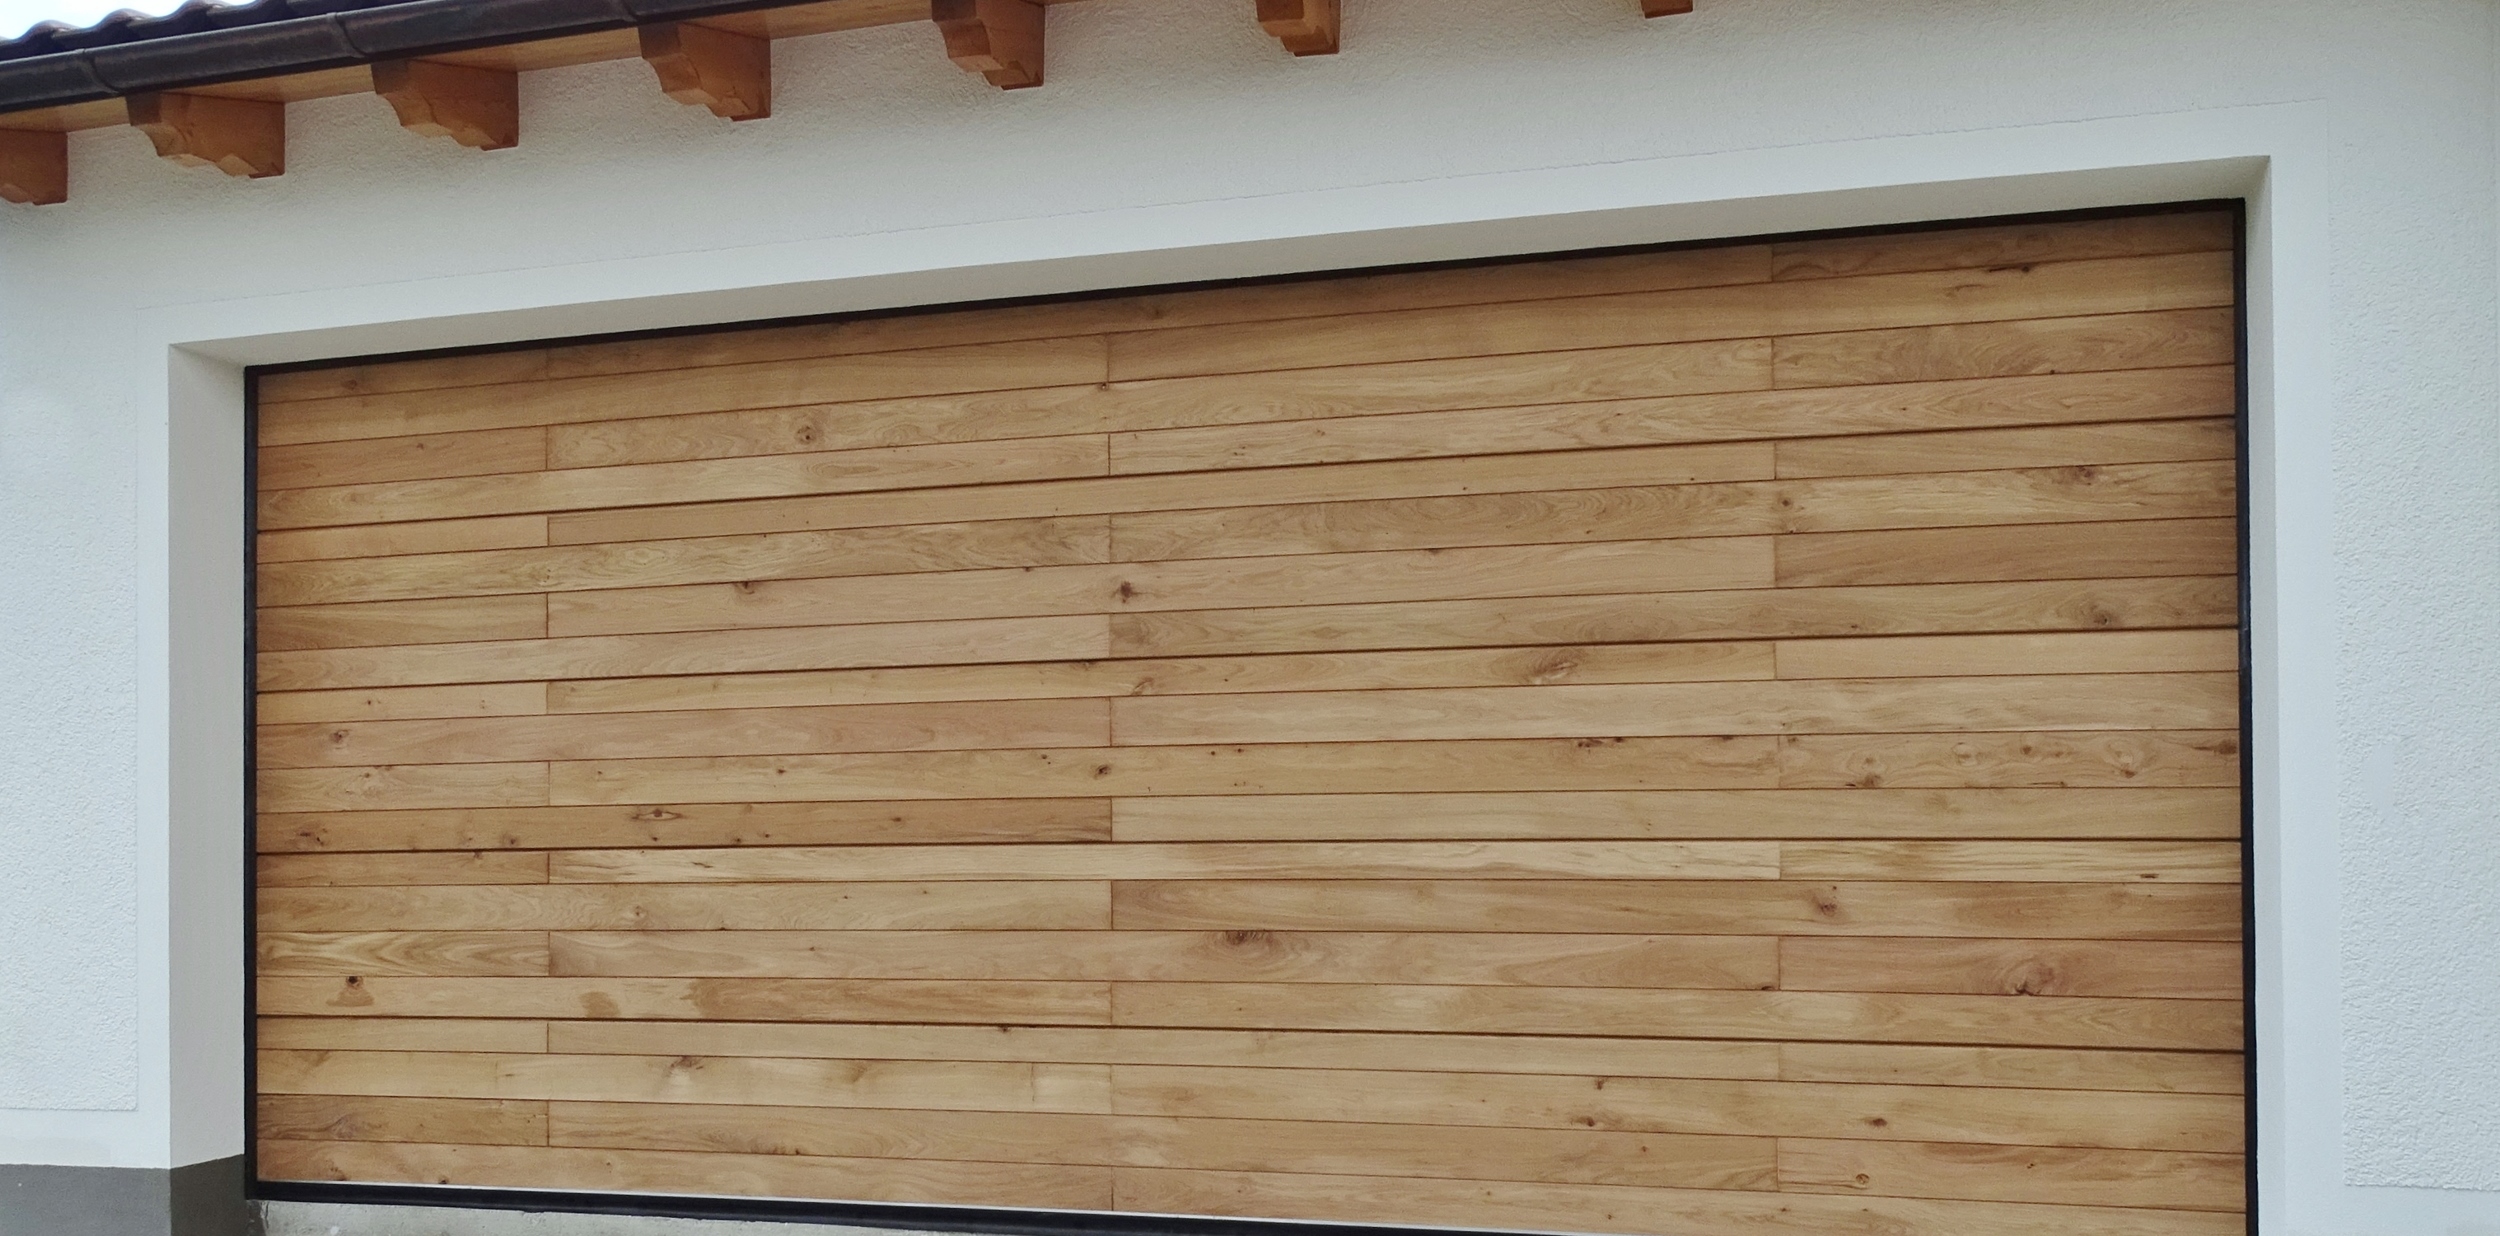 Holz-Sektionaltor mit Eiche-Profilbretter, gestoßen, 4960 x 2260 mm.JPG